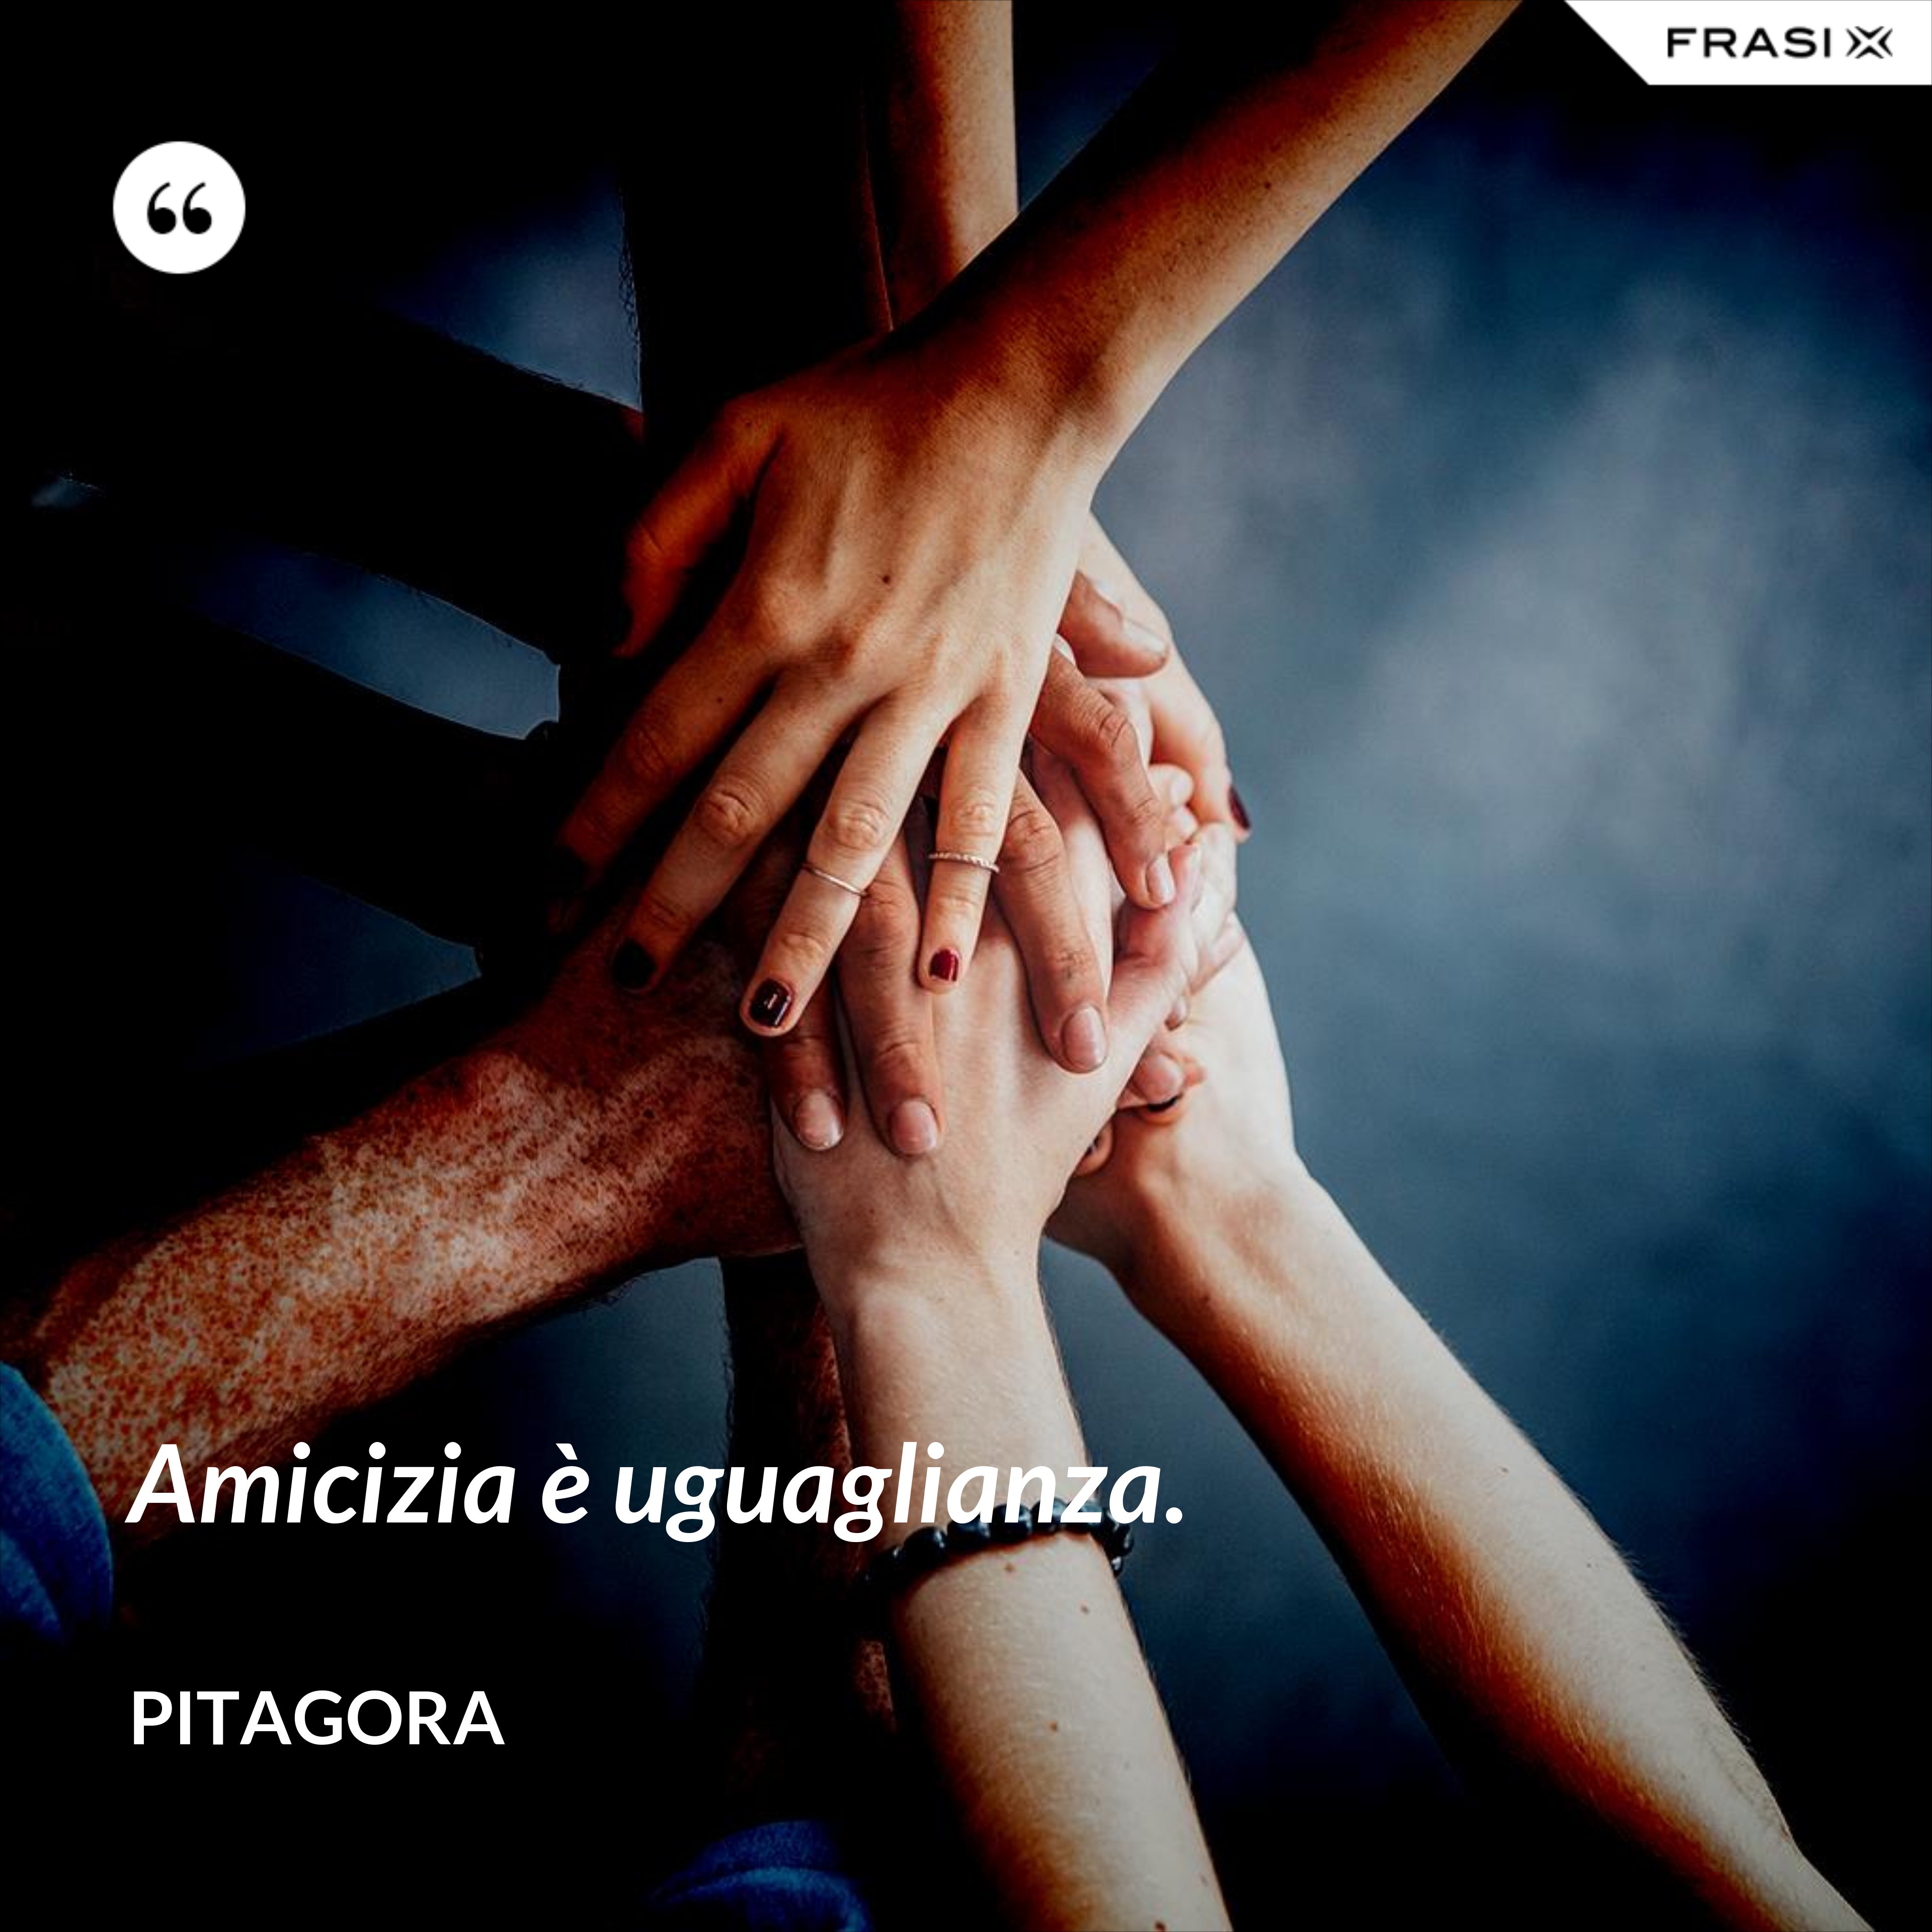 Amicizia è uguaglianza. - Pitagora